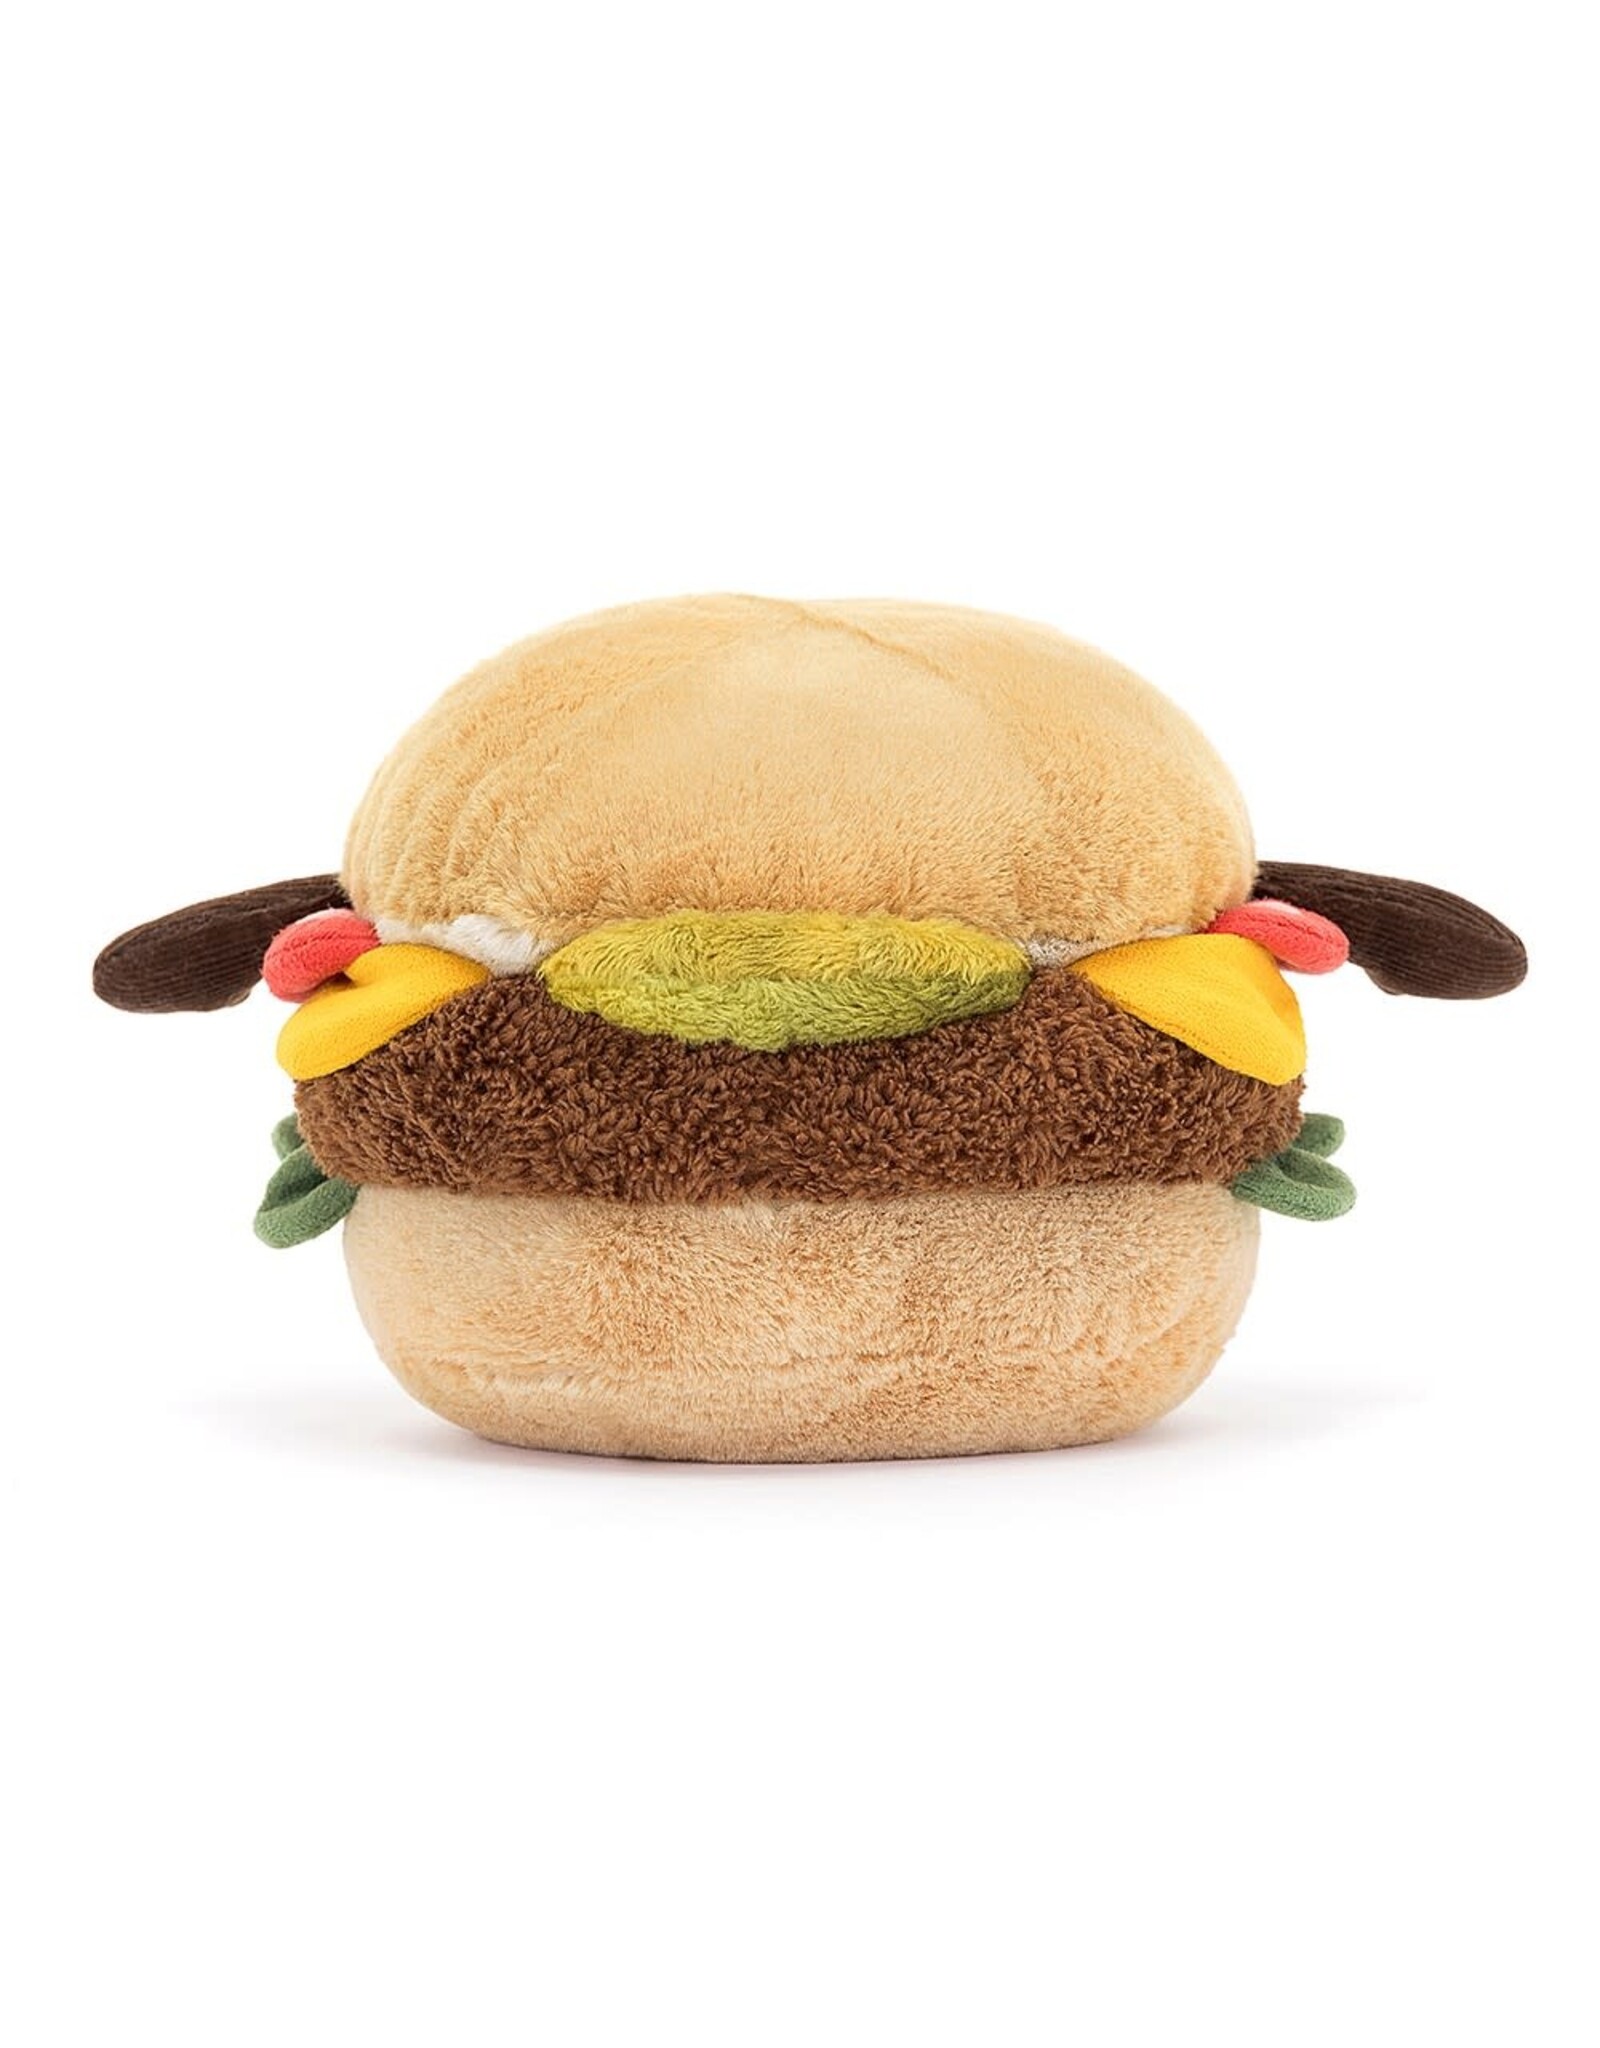 Jellycat Knuffel - Amuseable - Burger